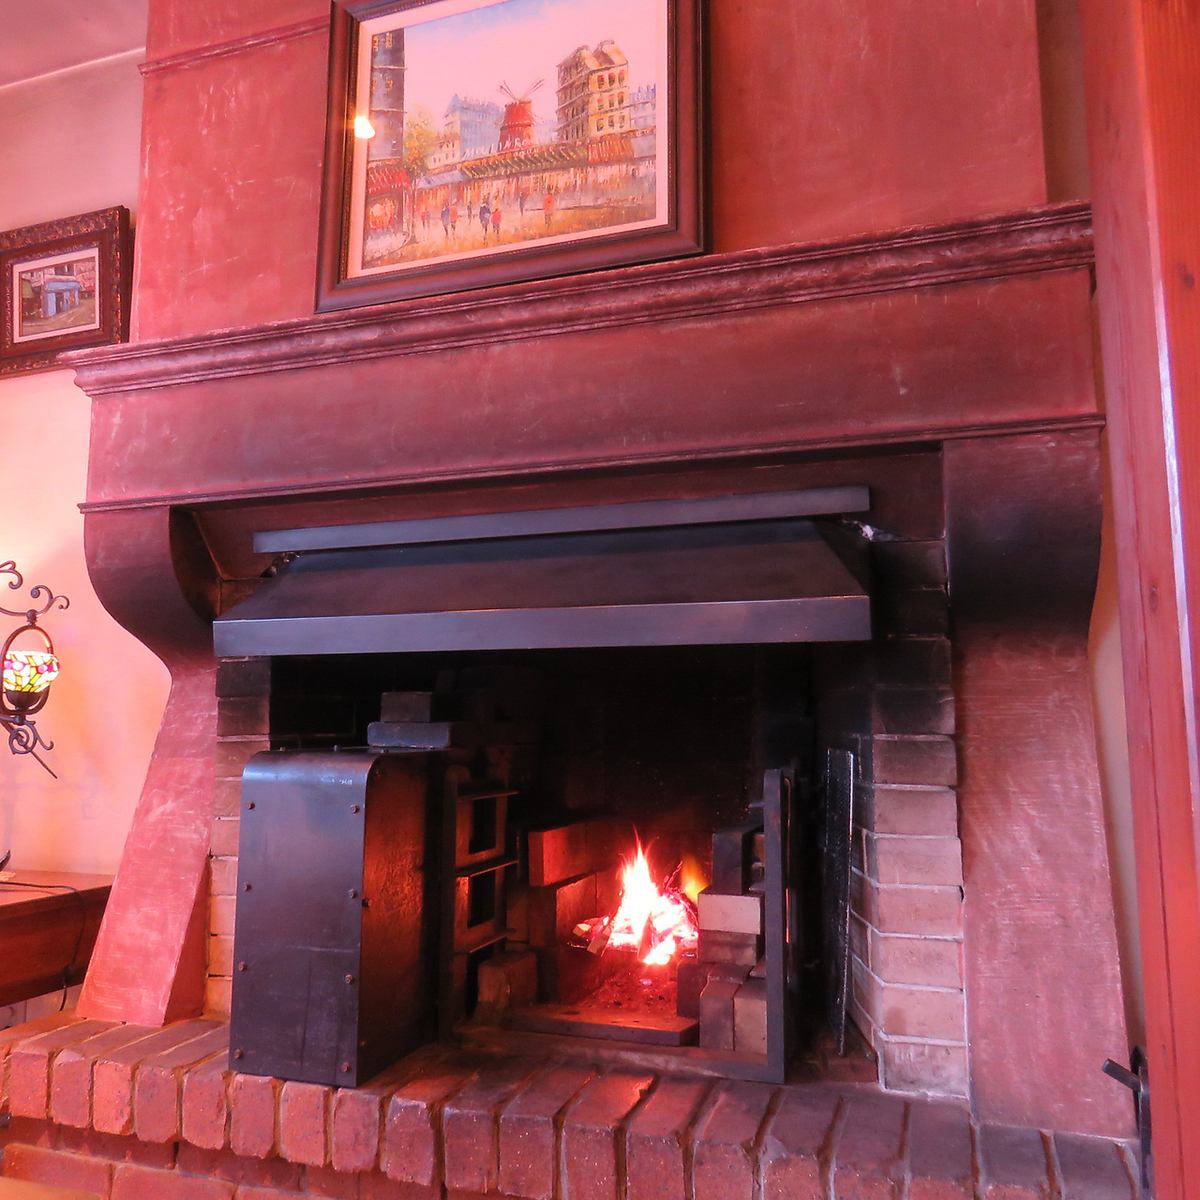 在豪华餐厅内，是一家法国餐厅，在壁炉中散发着烘烤成分的芬芳。